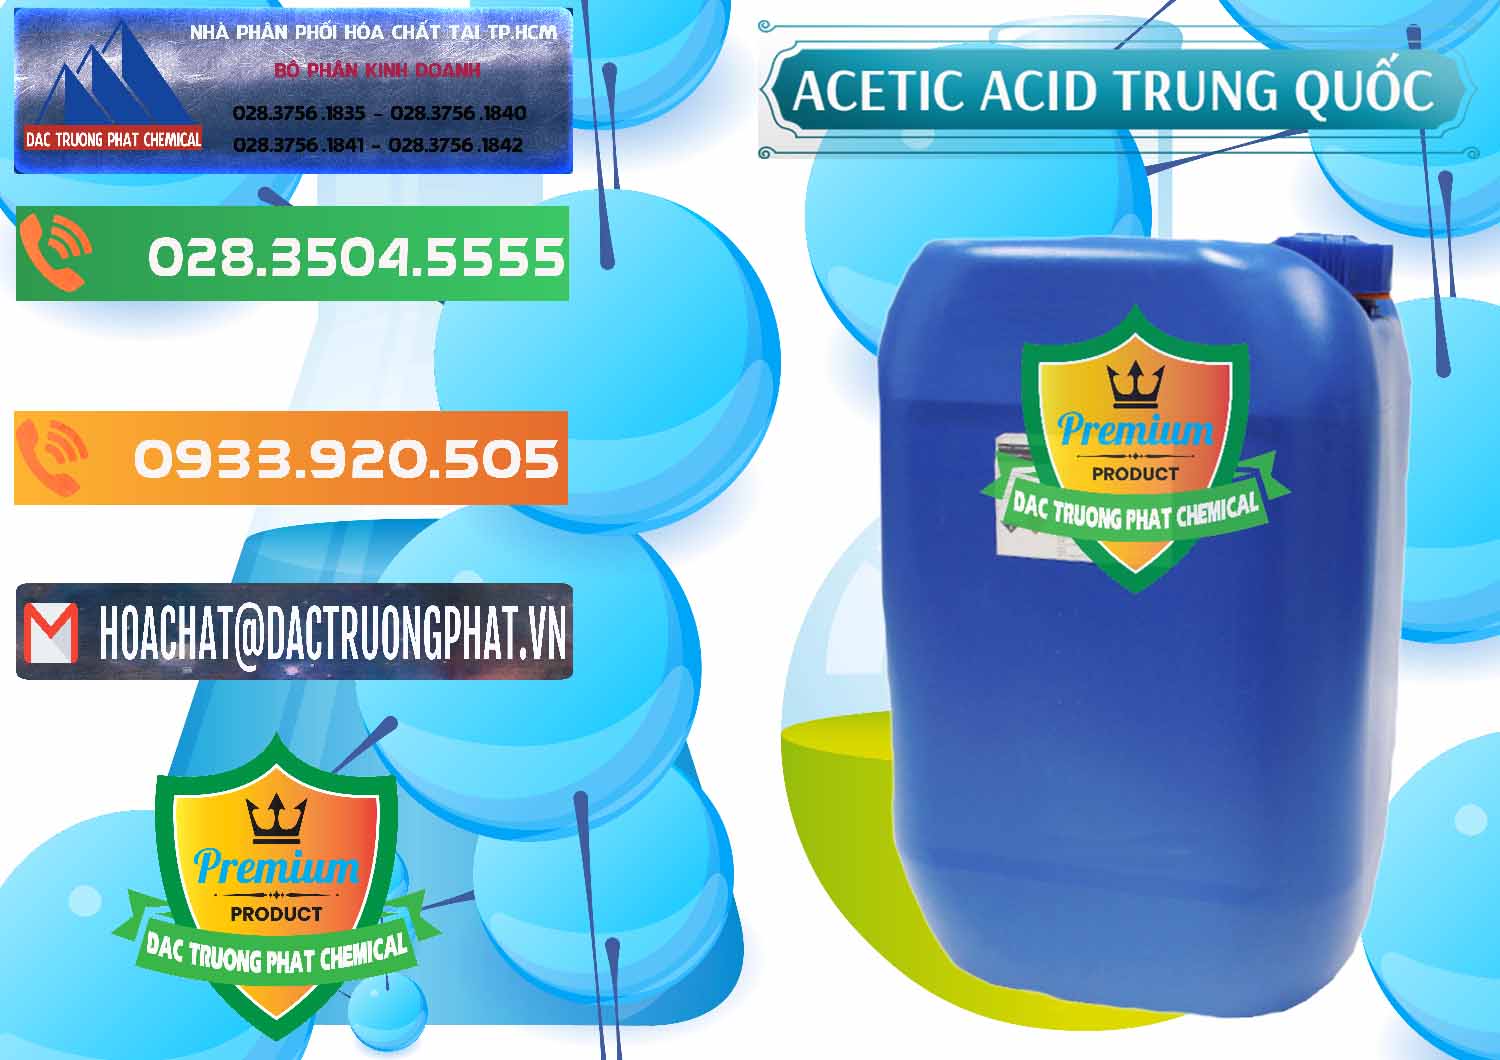 Cty chuyên phân phối và bán Acetic Acid – Axit Acetic Trung Quốc China - 0358 - Nơi chuyên bán ( phân phối ) hóa chất tại TP.HCM - hoachatxulynuoc.com.vn